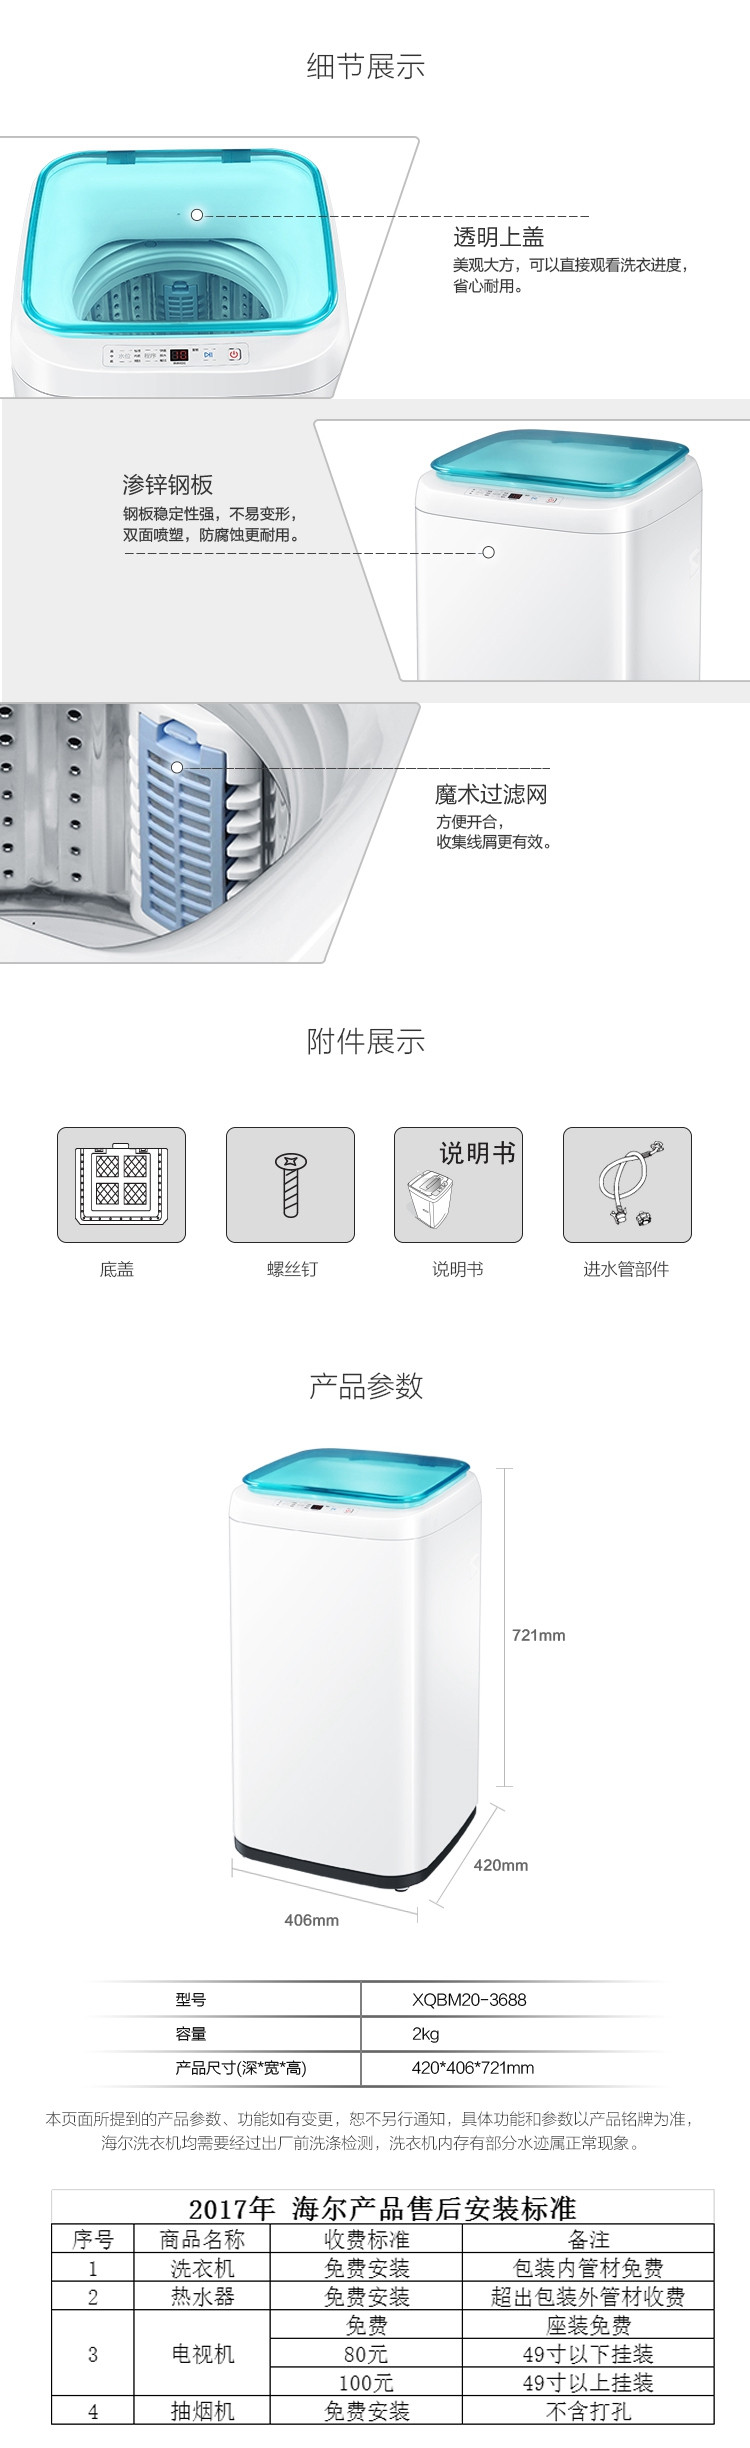 【仅限新乡地区销售】海尔洗衣机XQBM20-3688全自动瓷白顶开门迷你波轮洗衣机2KG容量